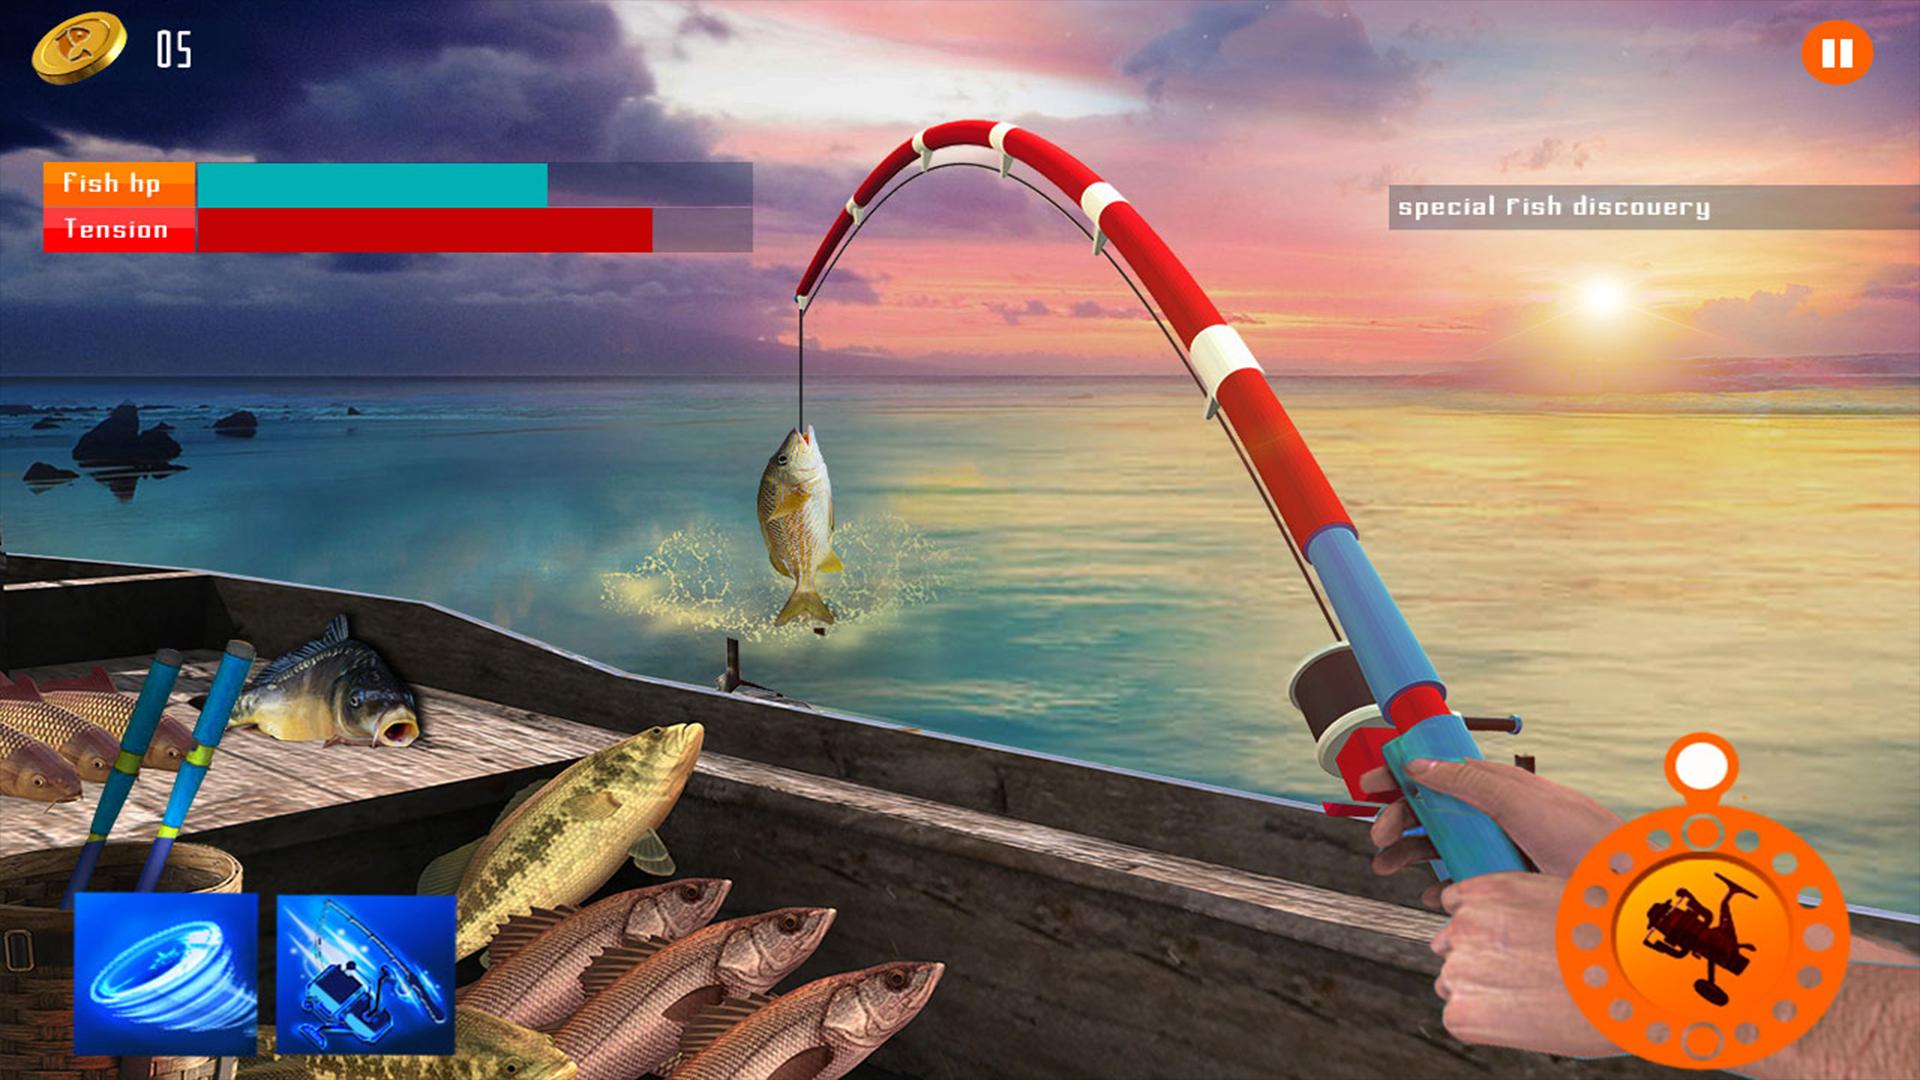 Игра рыбалка все открыто. Игра Sport Fishing. Fishing Hook игра. Симулятор рыбалки. Игра рыбачить рыбу.